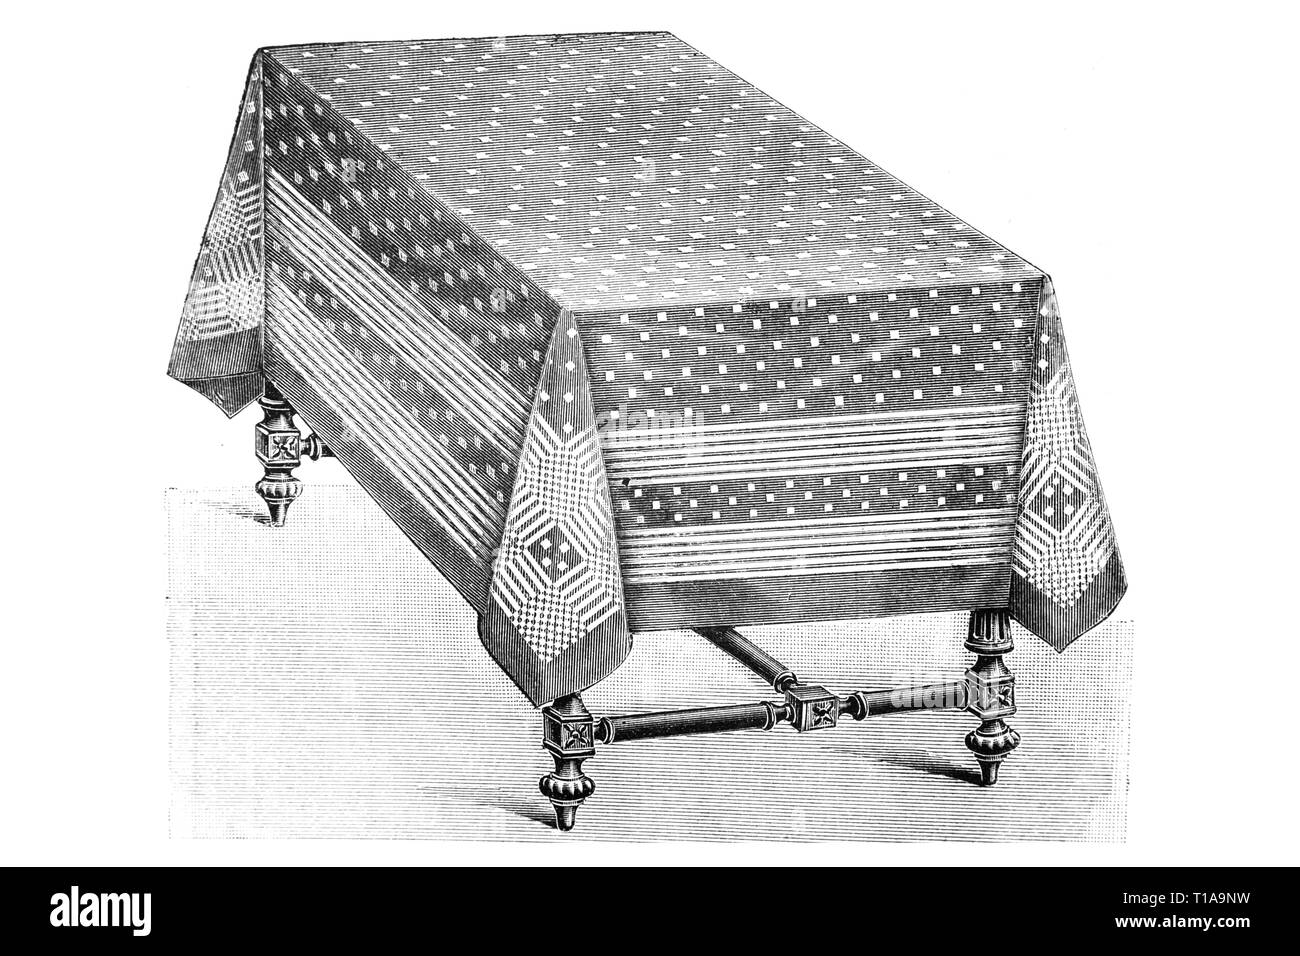 Table avec nappe - Illustration Vintage 1905 Banque D'Images